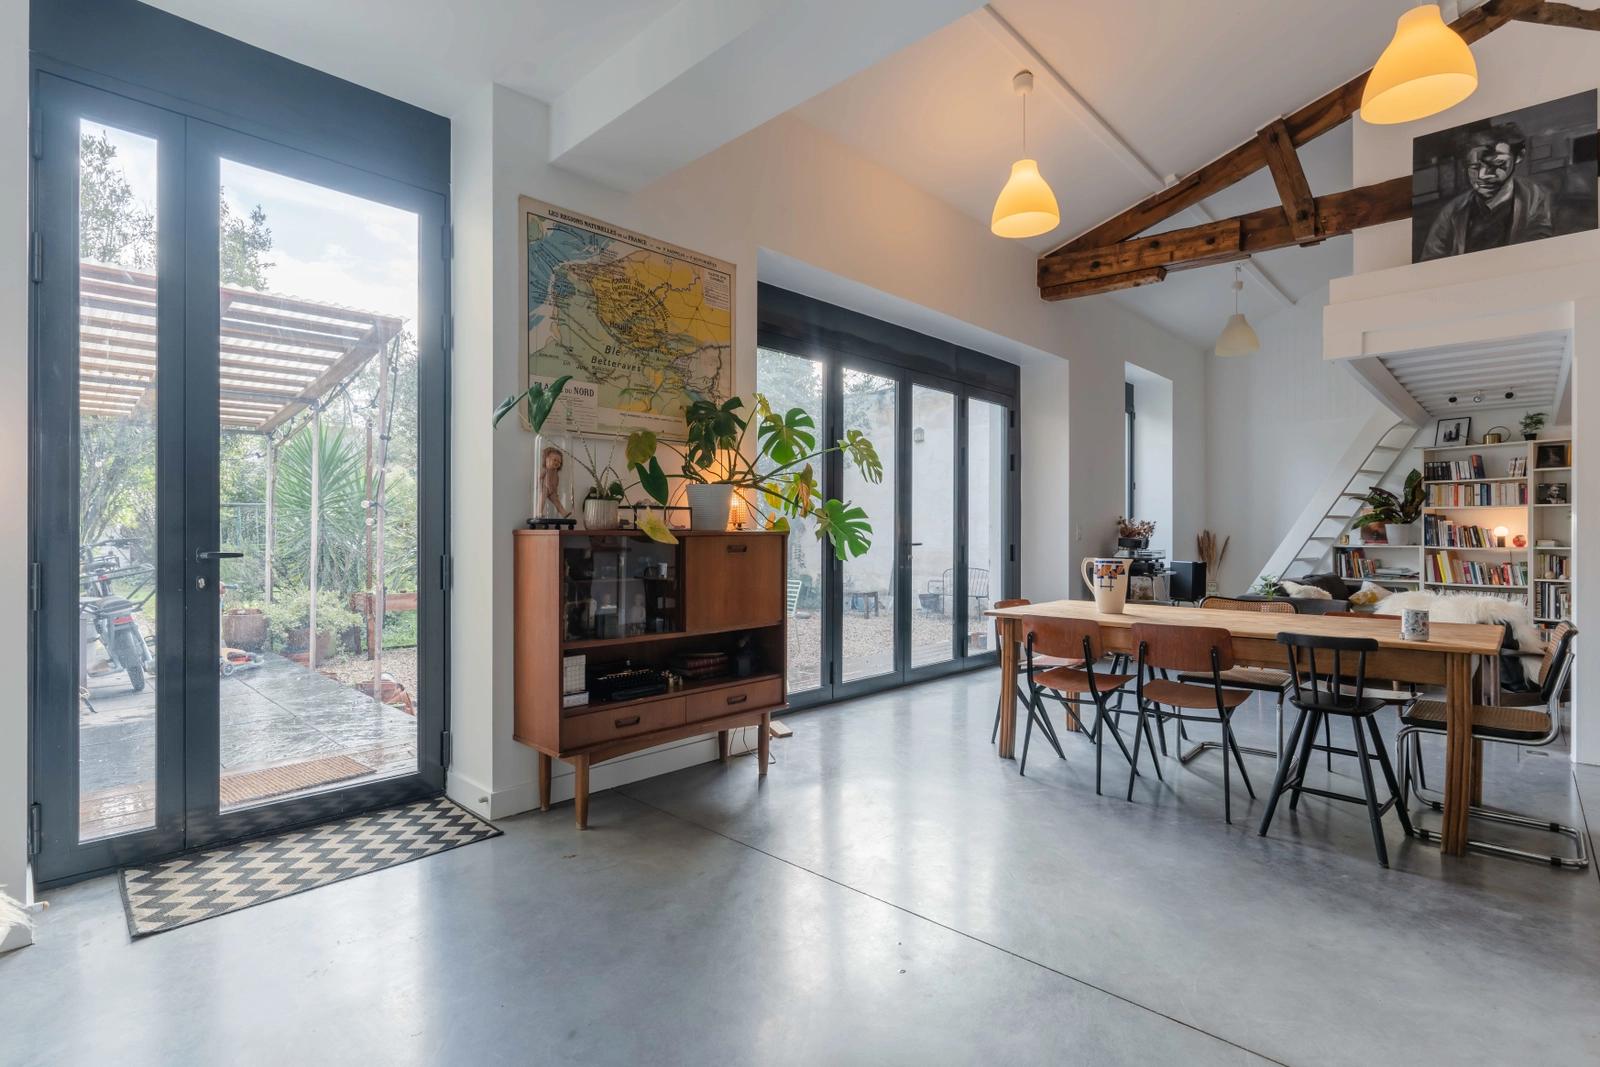 Comedor dentro Casa de una sola planta diseñada por un arquitecto - 0